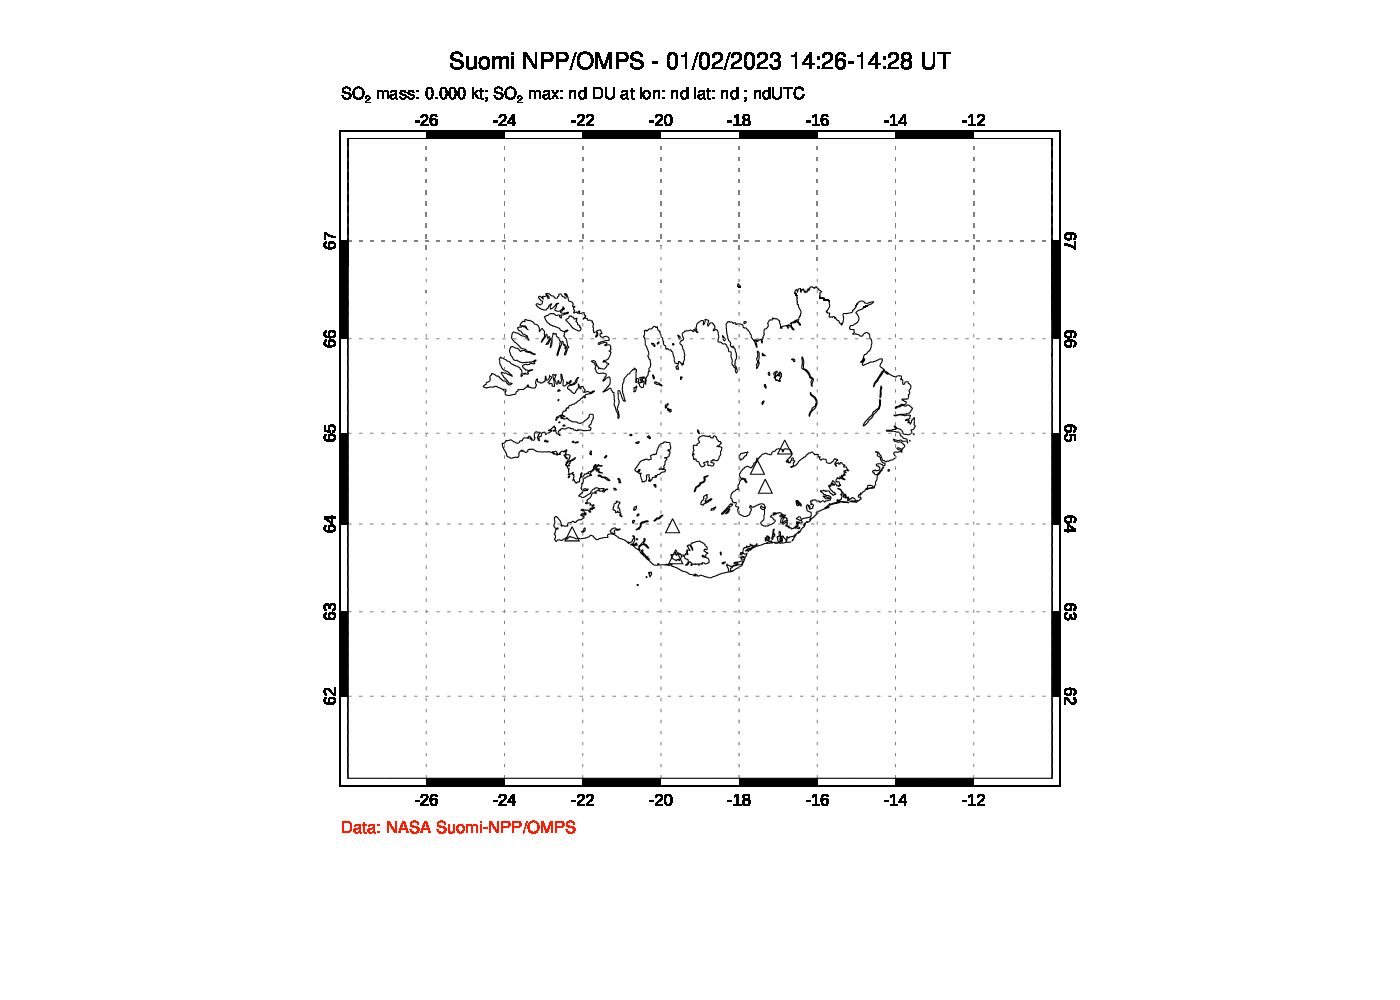 A sulfur dioxide image over Iceland on Jan 02, 2023.